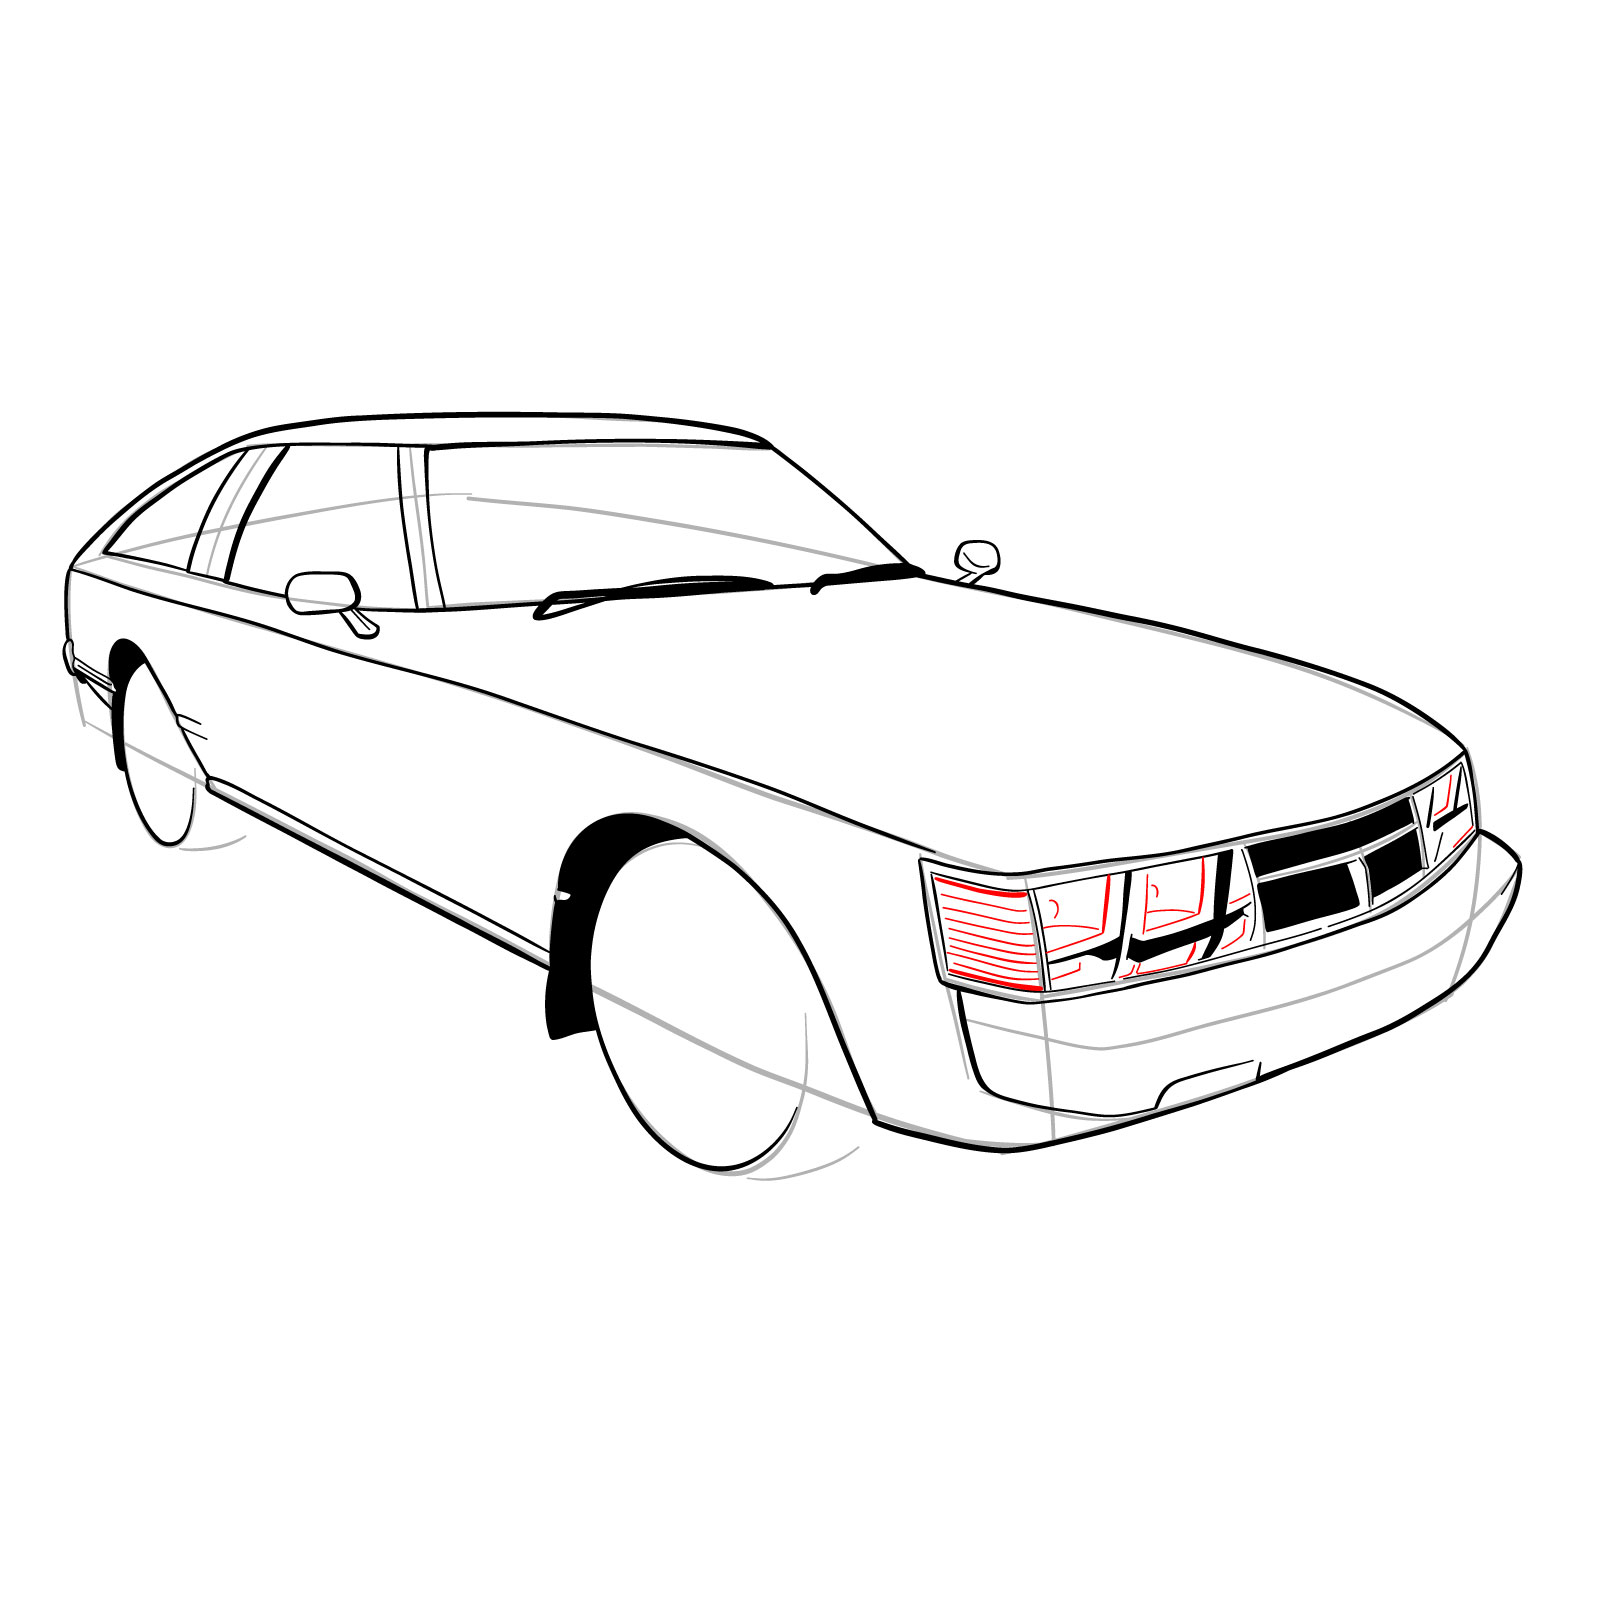 How to draw a 1979 Toyota Celica Supra Mk I Coupe - step 22